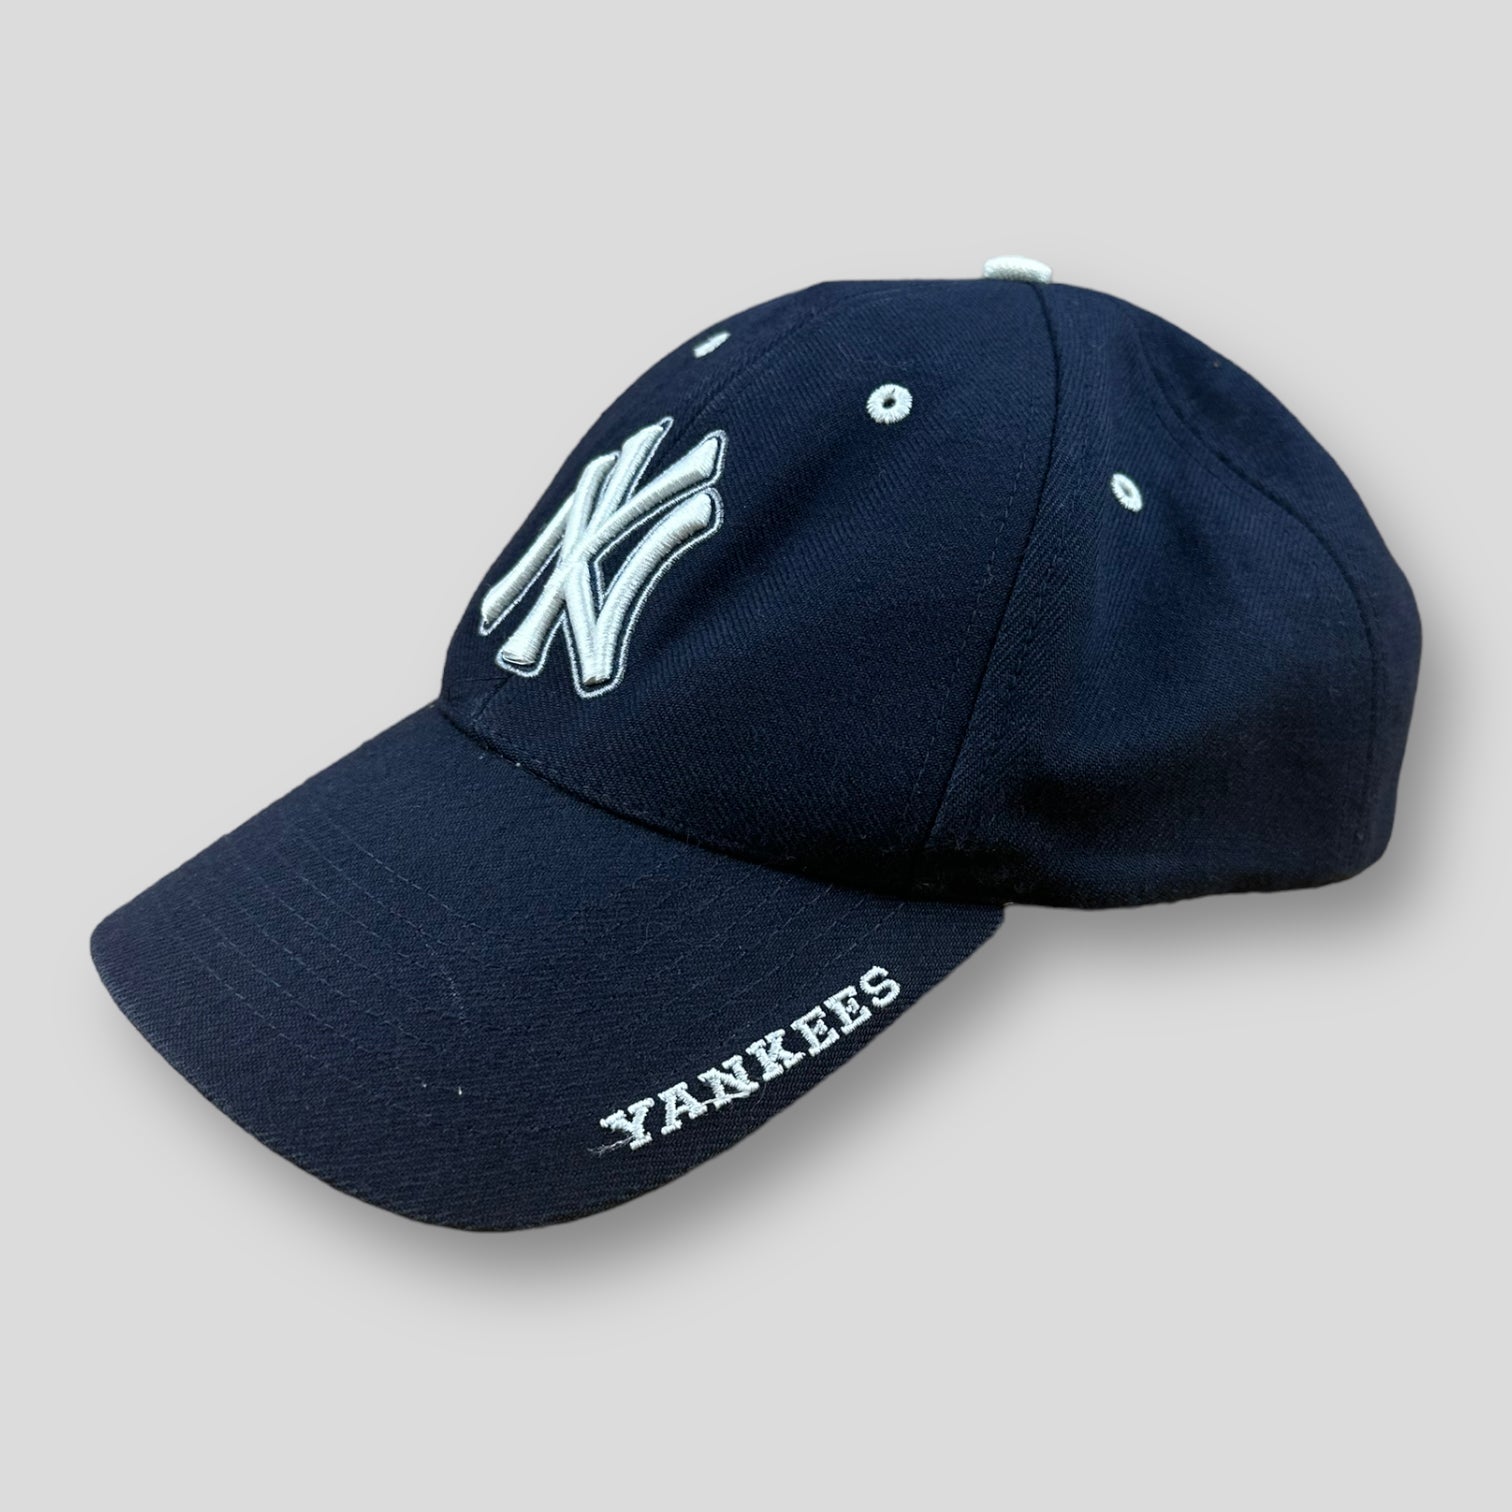 NYC Yankees cap